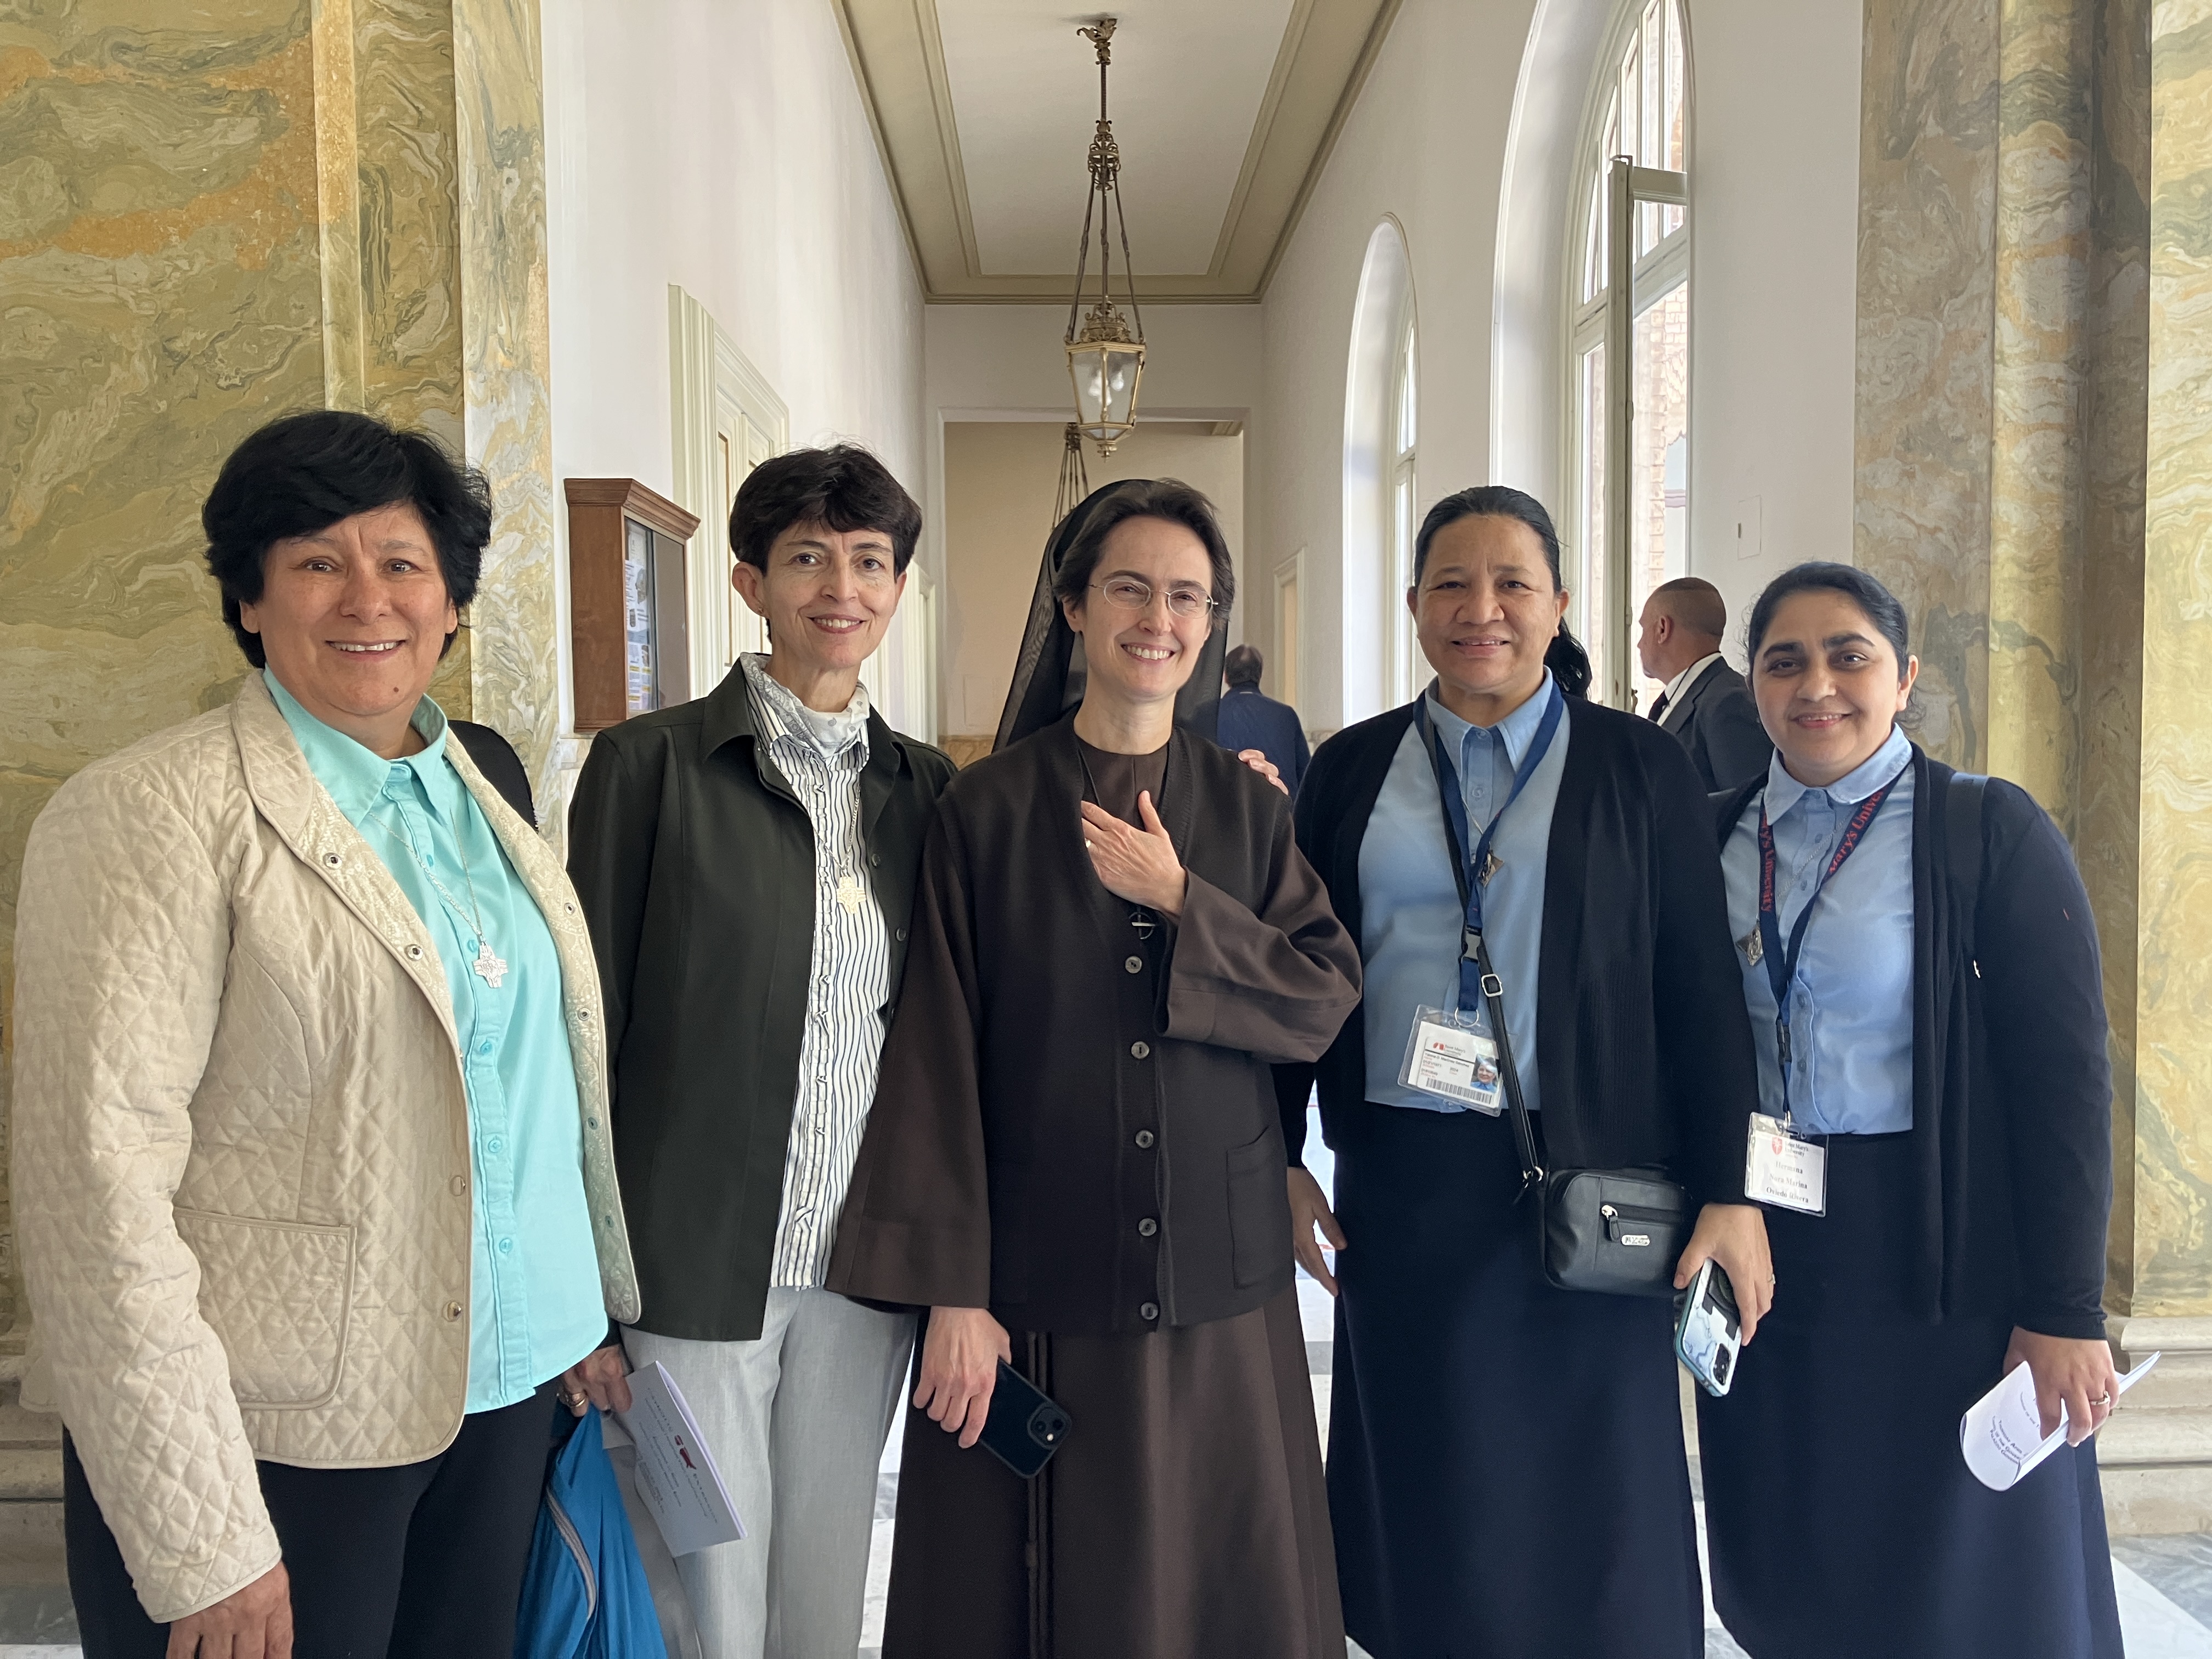 La hermana María Elena Méndez Ochoa y hermanas de la delegación de Catholic Extension en Roma junto a la hermana Raffaella Petrini. (Foto: cortesía María E. Méndez O.)